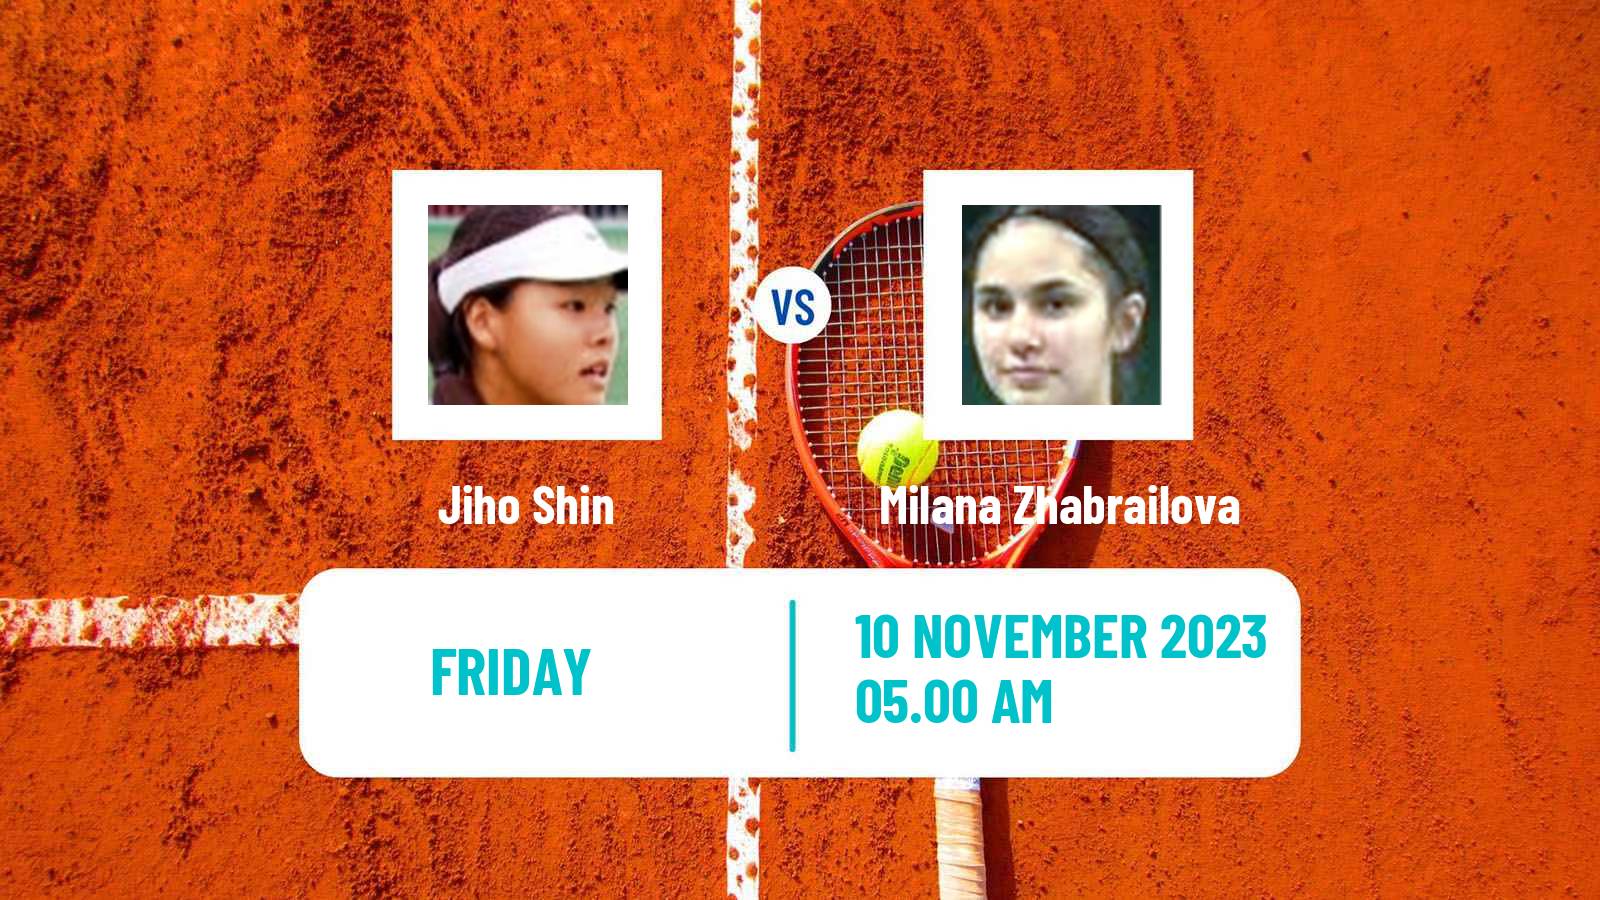 Tennis ITF W15 Monastir 39 Women Jiho Shin - Milana Zhabrailova